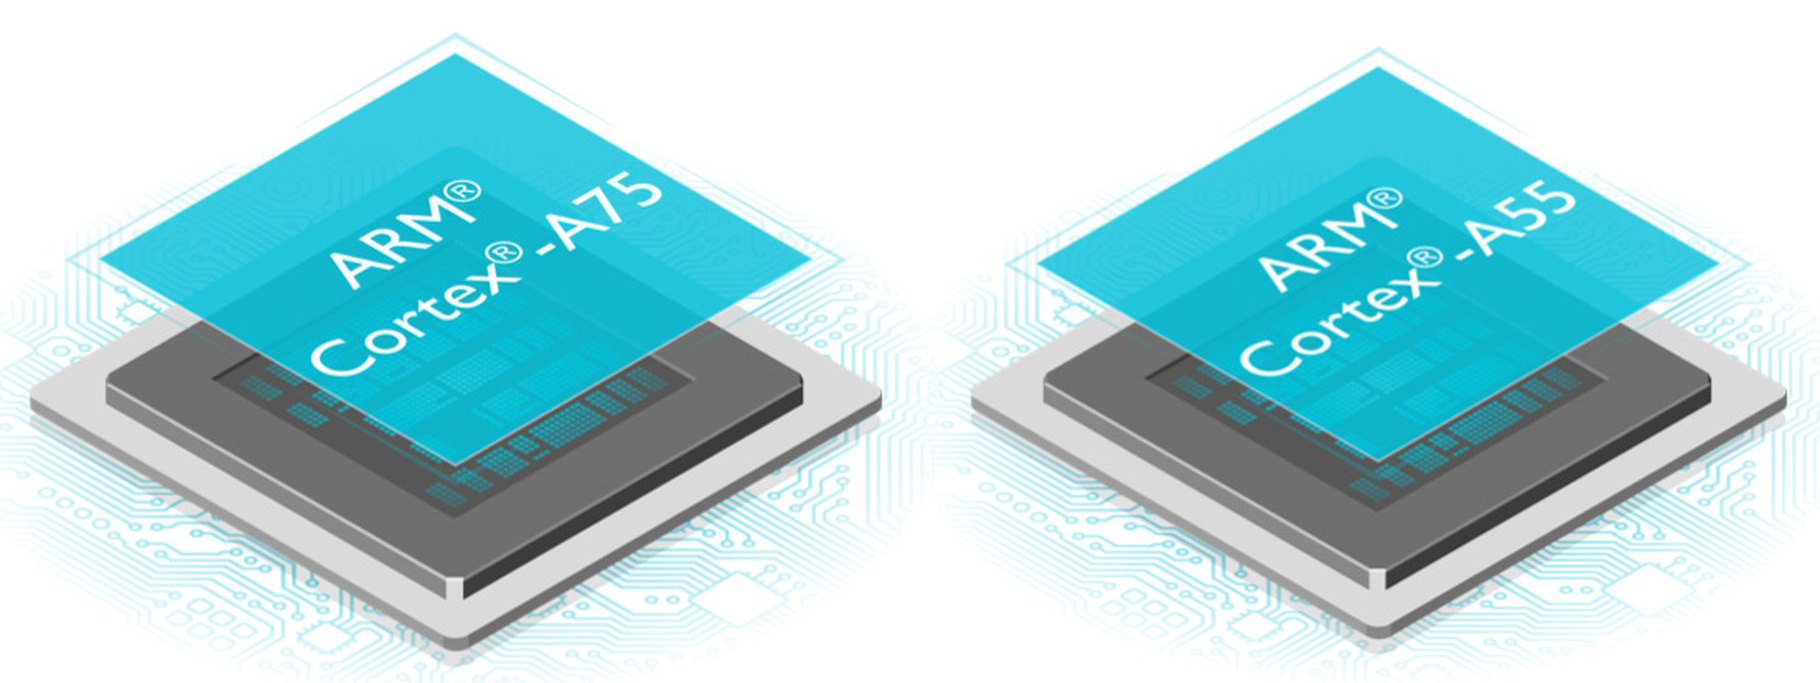 ARM giới thiệu Cortex-A75, A55 và Mali-G72 mới: tối ưu hiệu năng, tiết kiệm điện, linh hoạt hơn